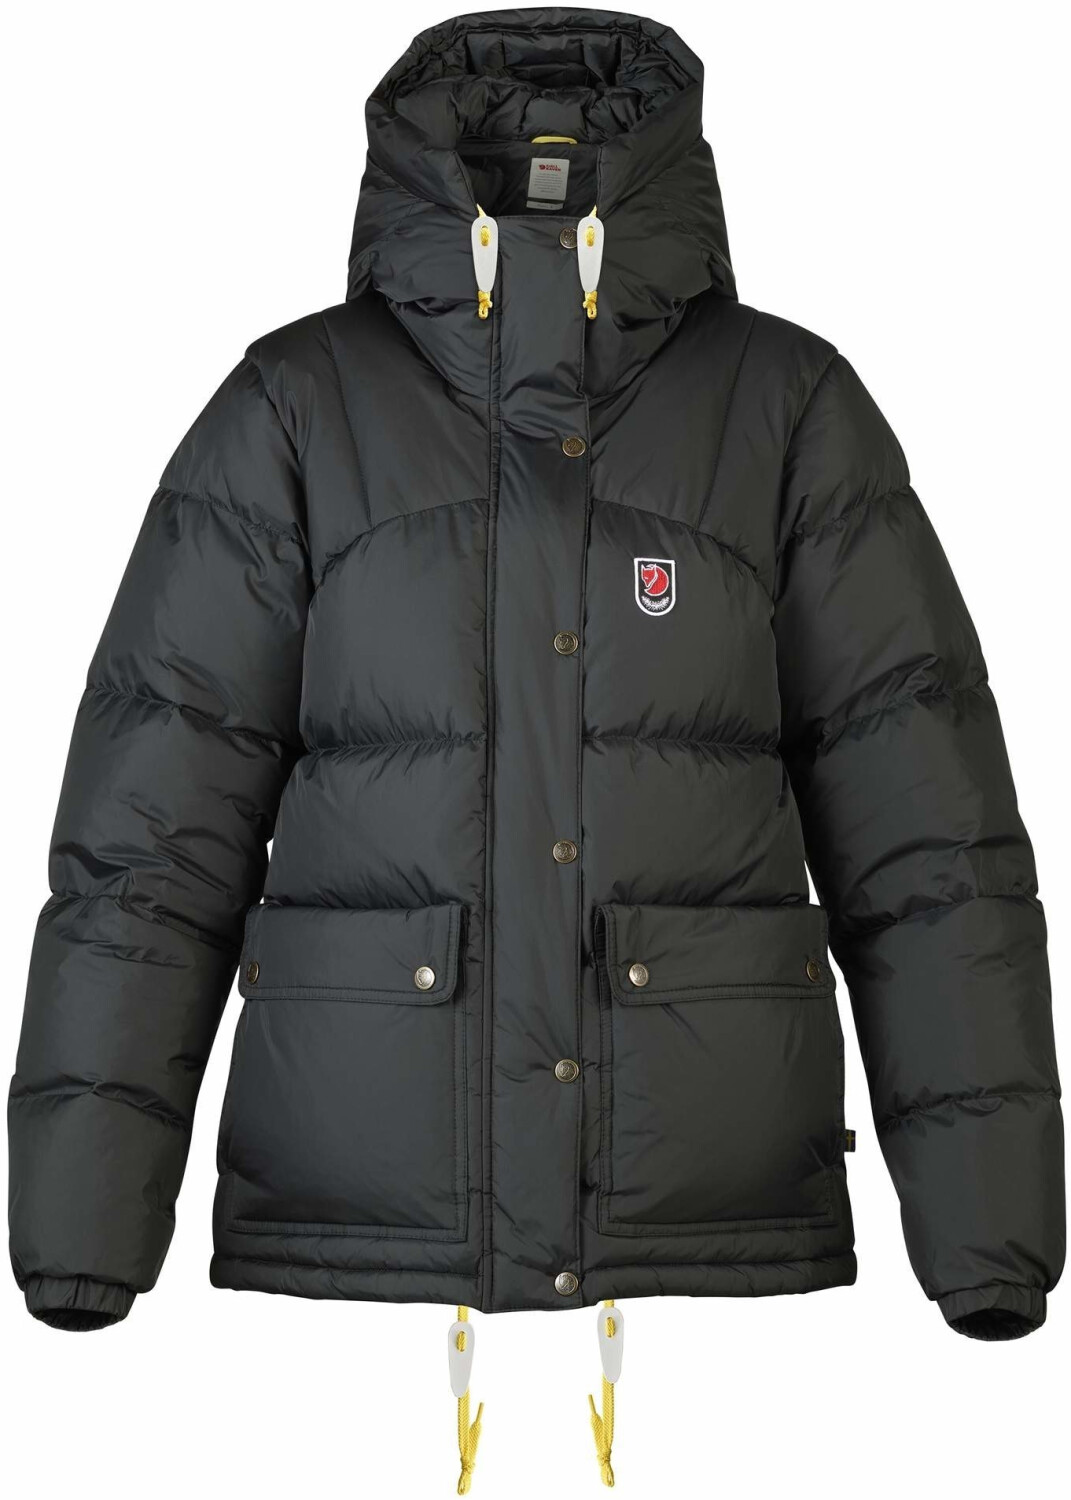 Buy Fjällräven Expedition Down Lite Jacket Women black from £464.94 ...